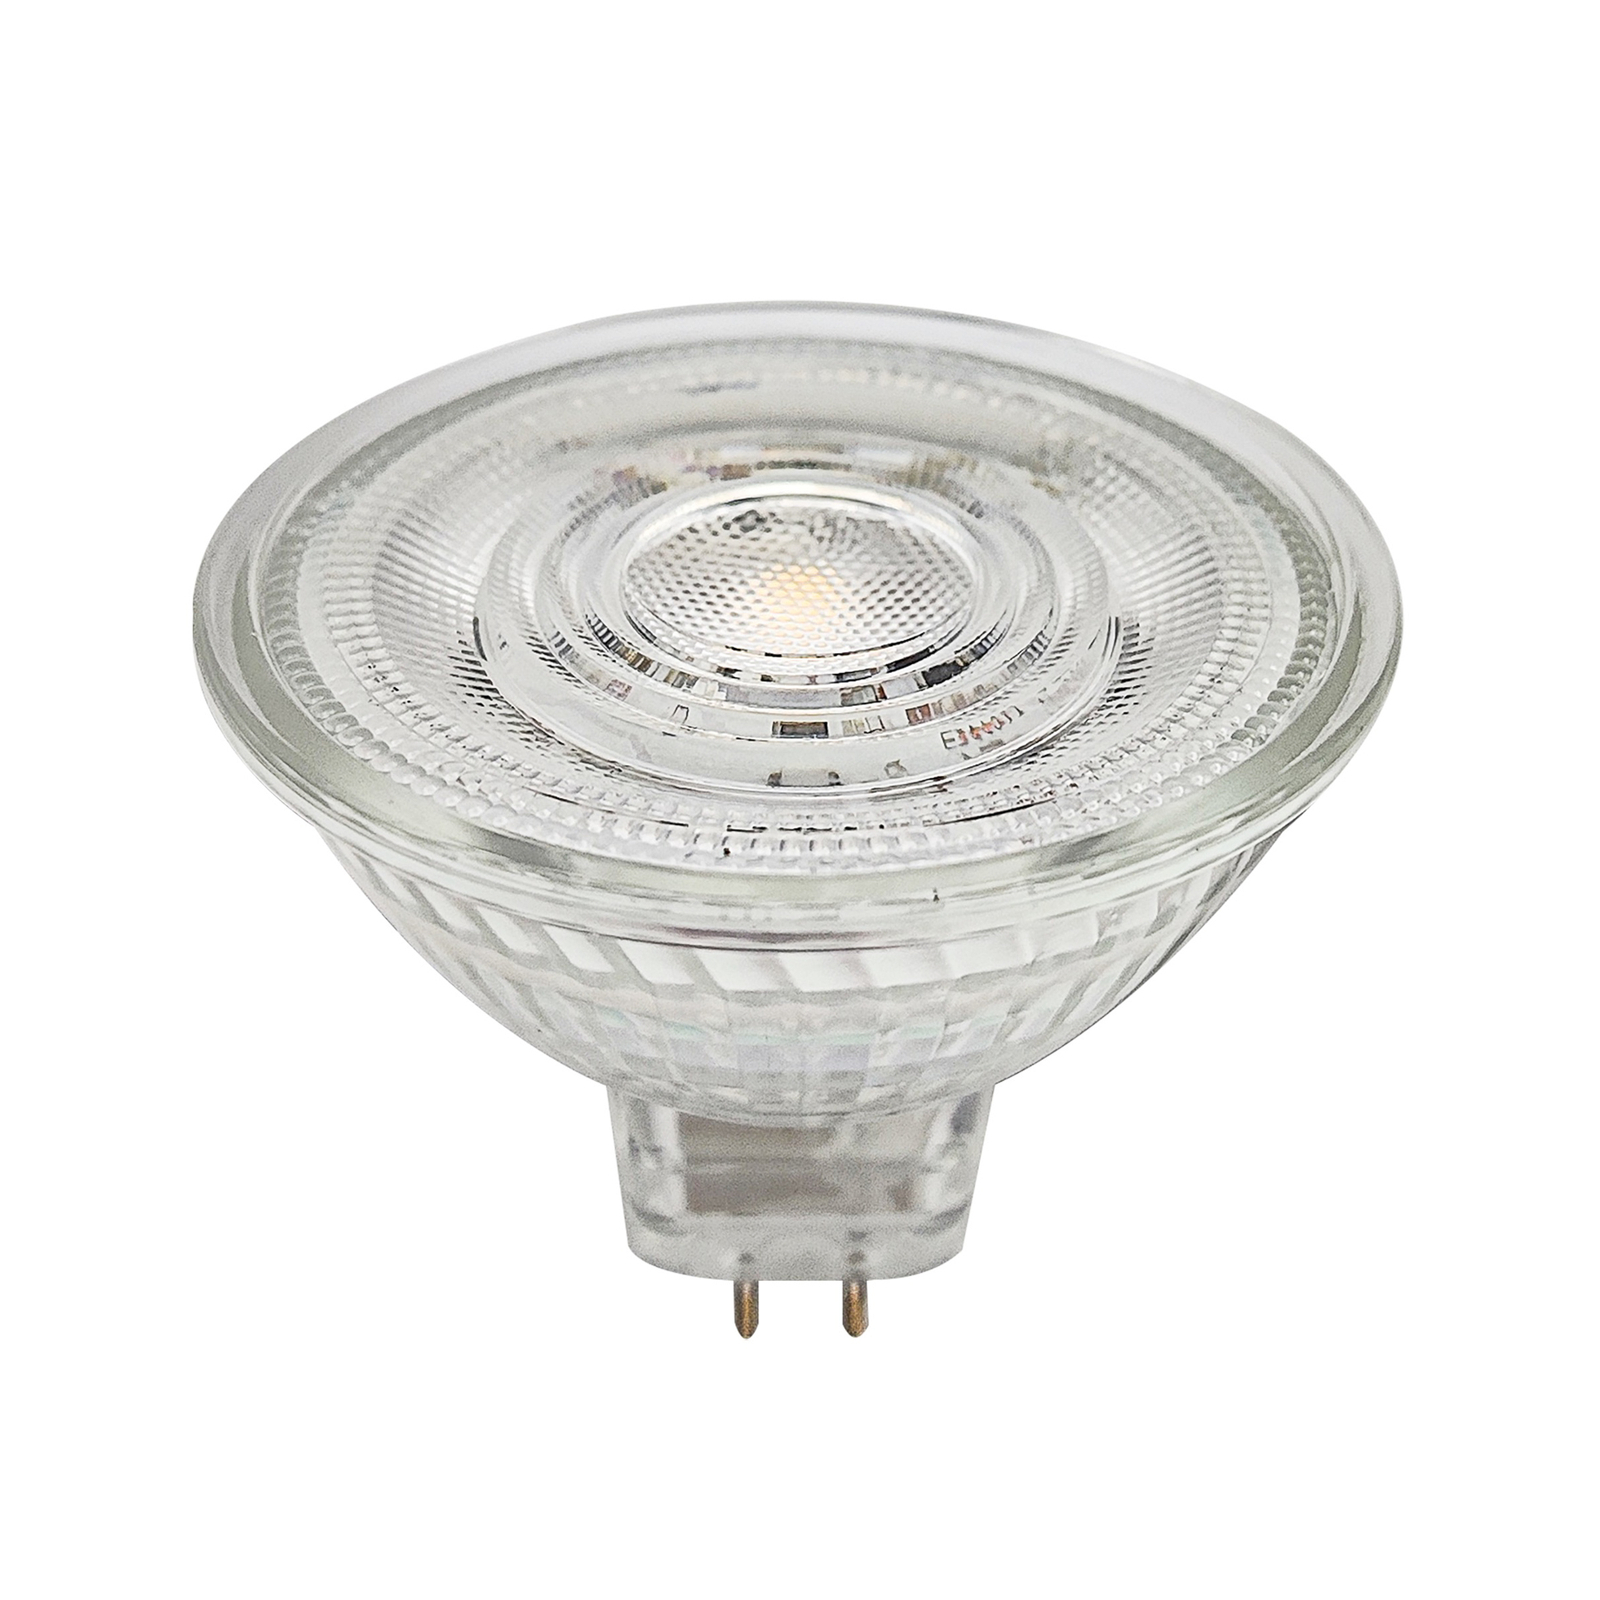 Prios LED reflectorlamp GU5.3 4.9W 500lm 36° helder 830